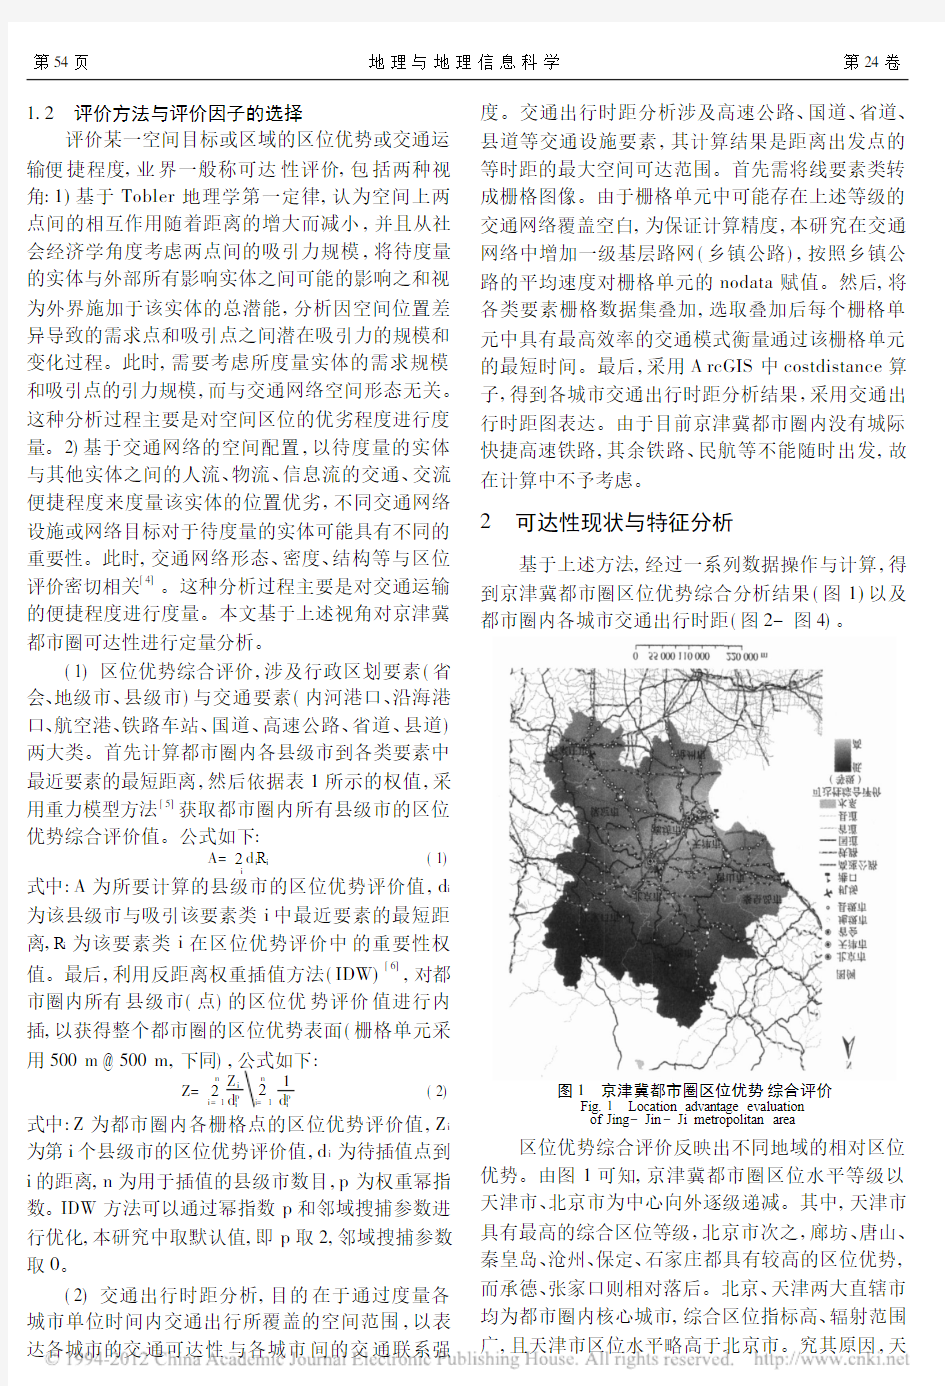 京津冀都市圈城市区位与交通可达性评价